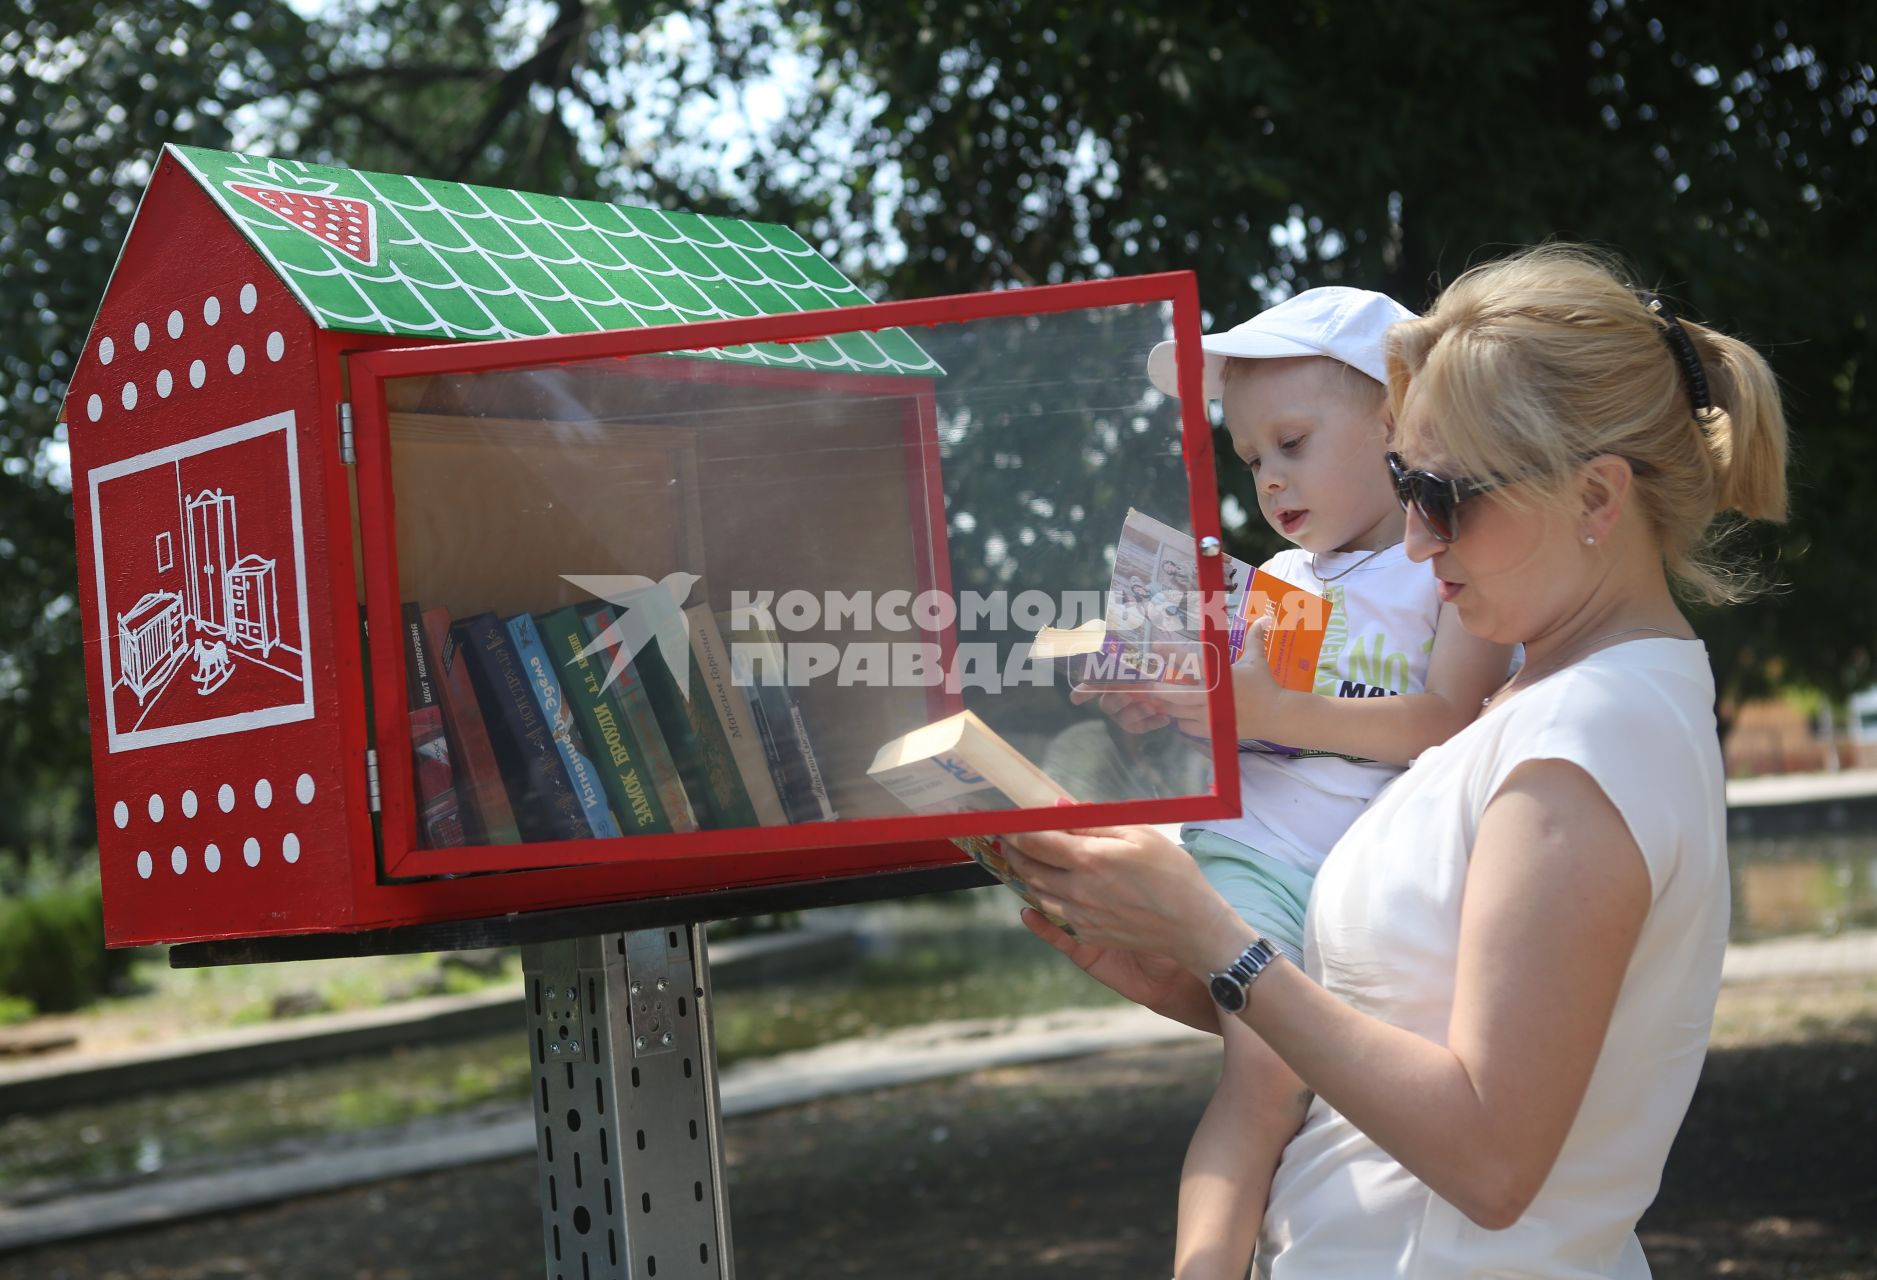 Мама с ребенком выбирает книги в уличной библиотеке организованной в краснодарском парке Городской сад.